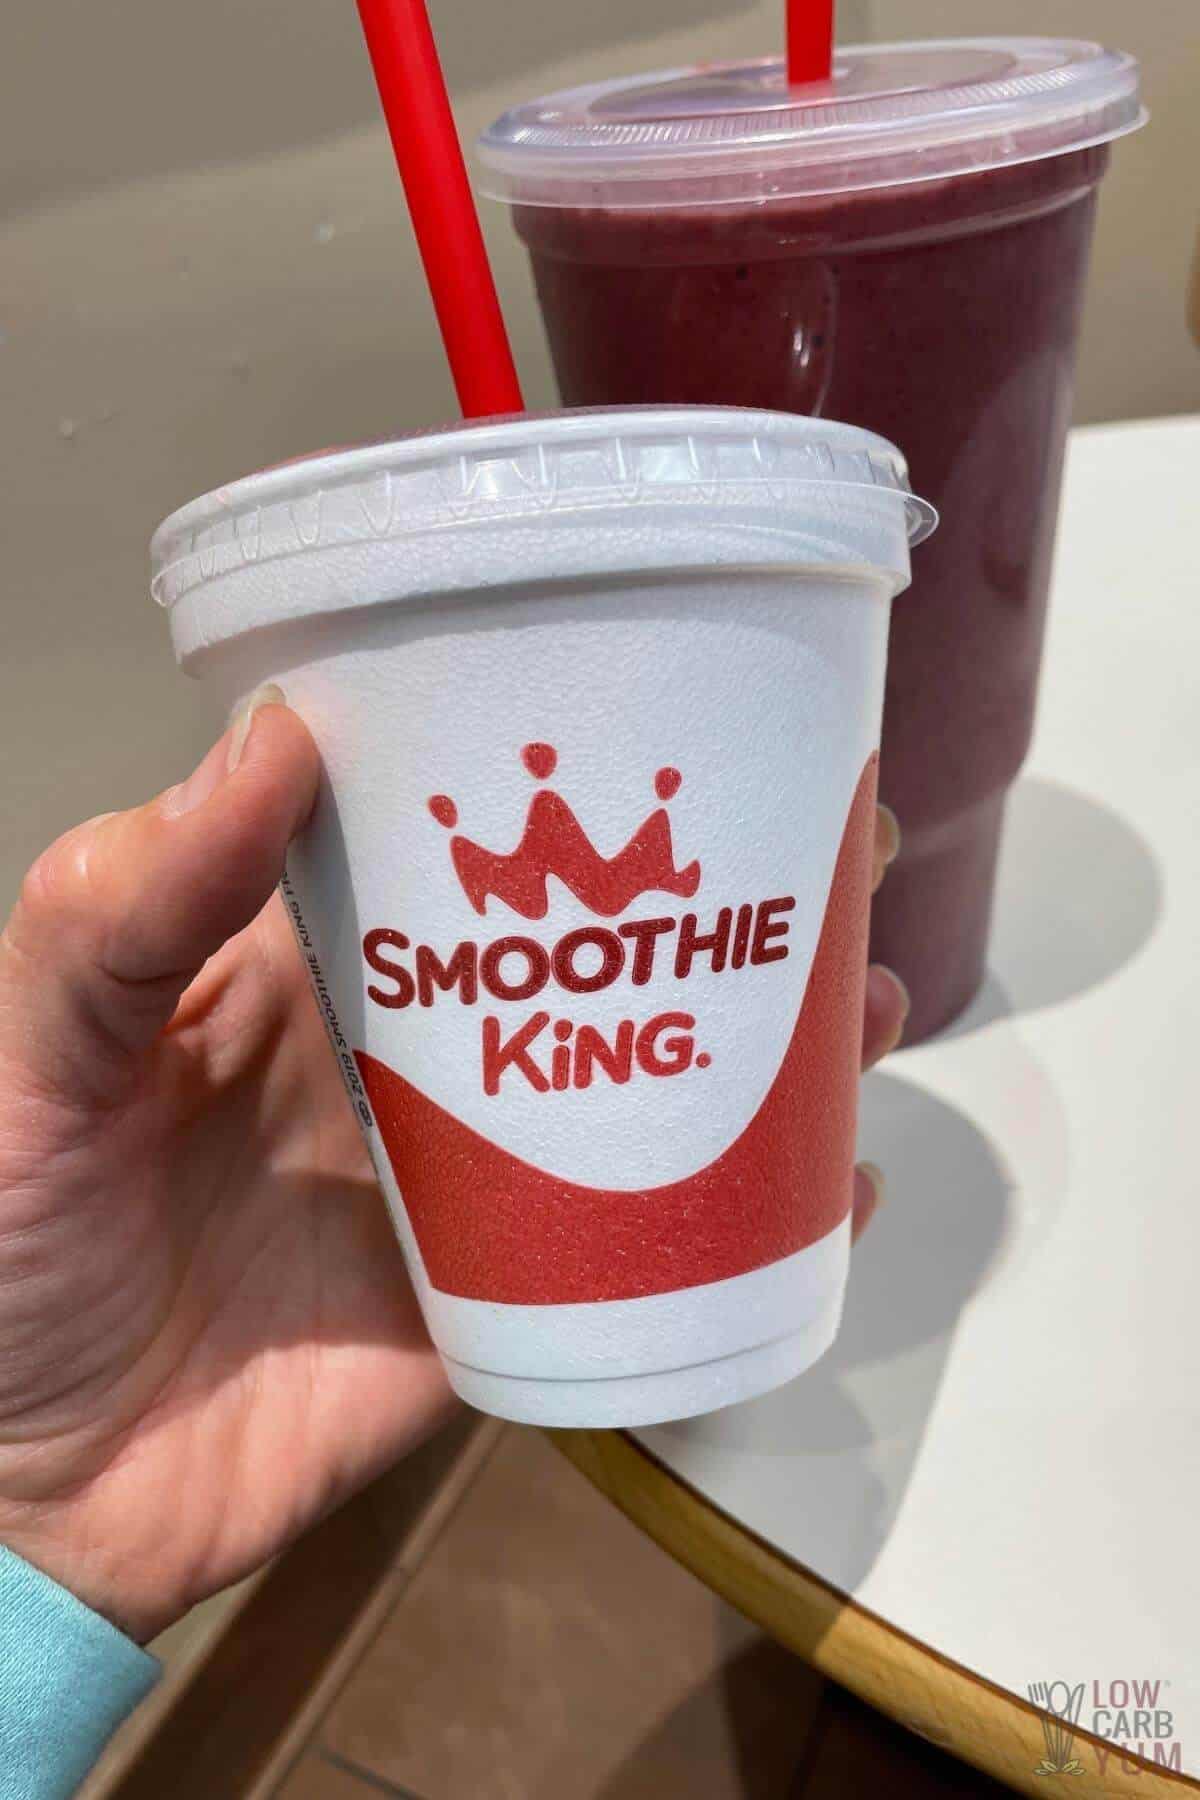 keto frieindly smoothie king smoothies